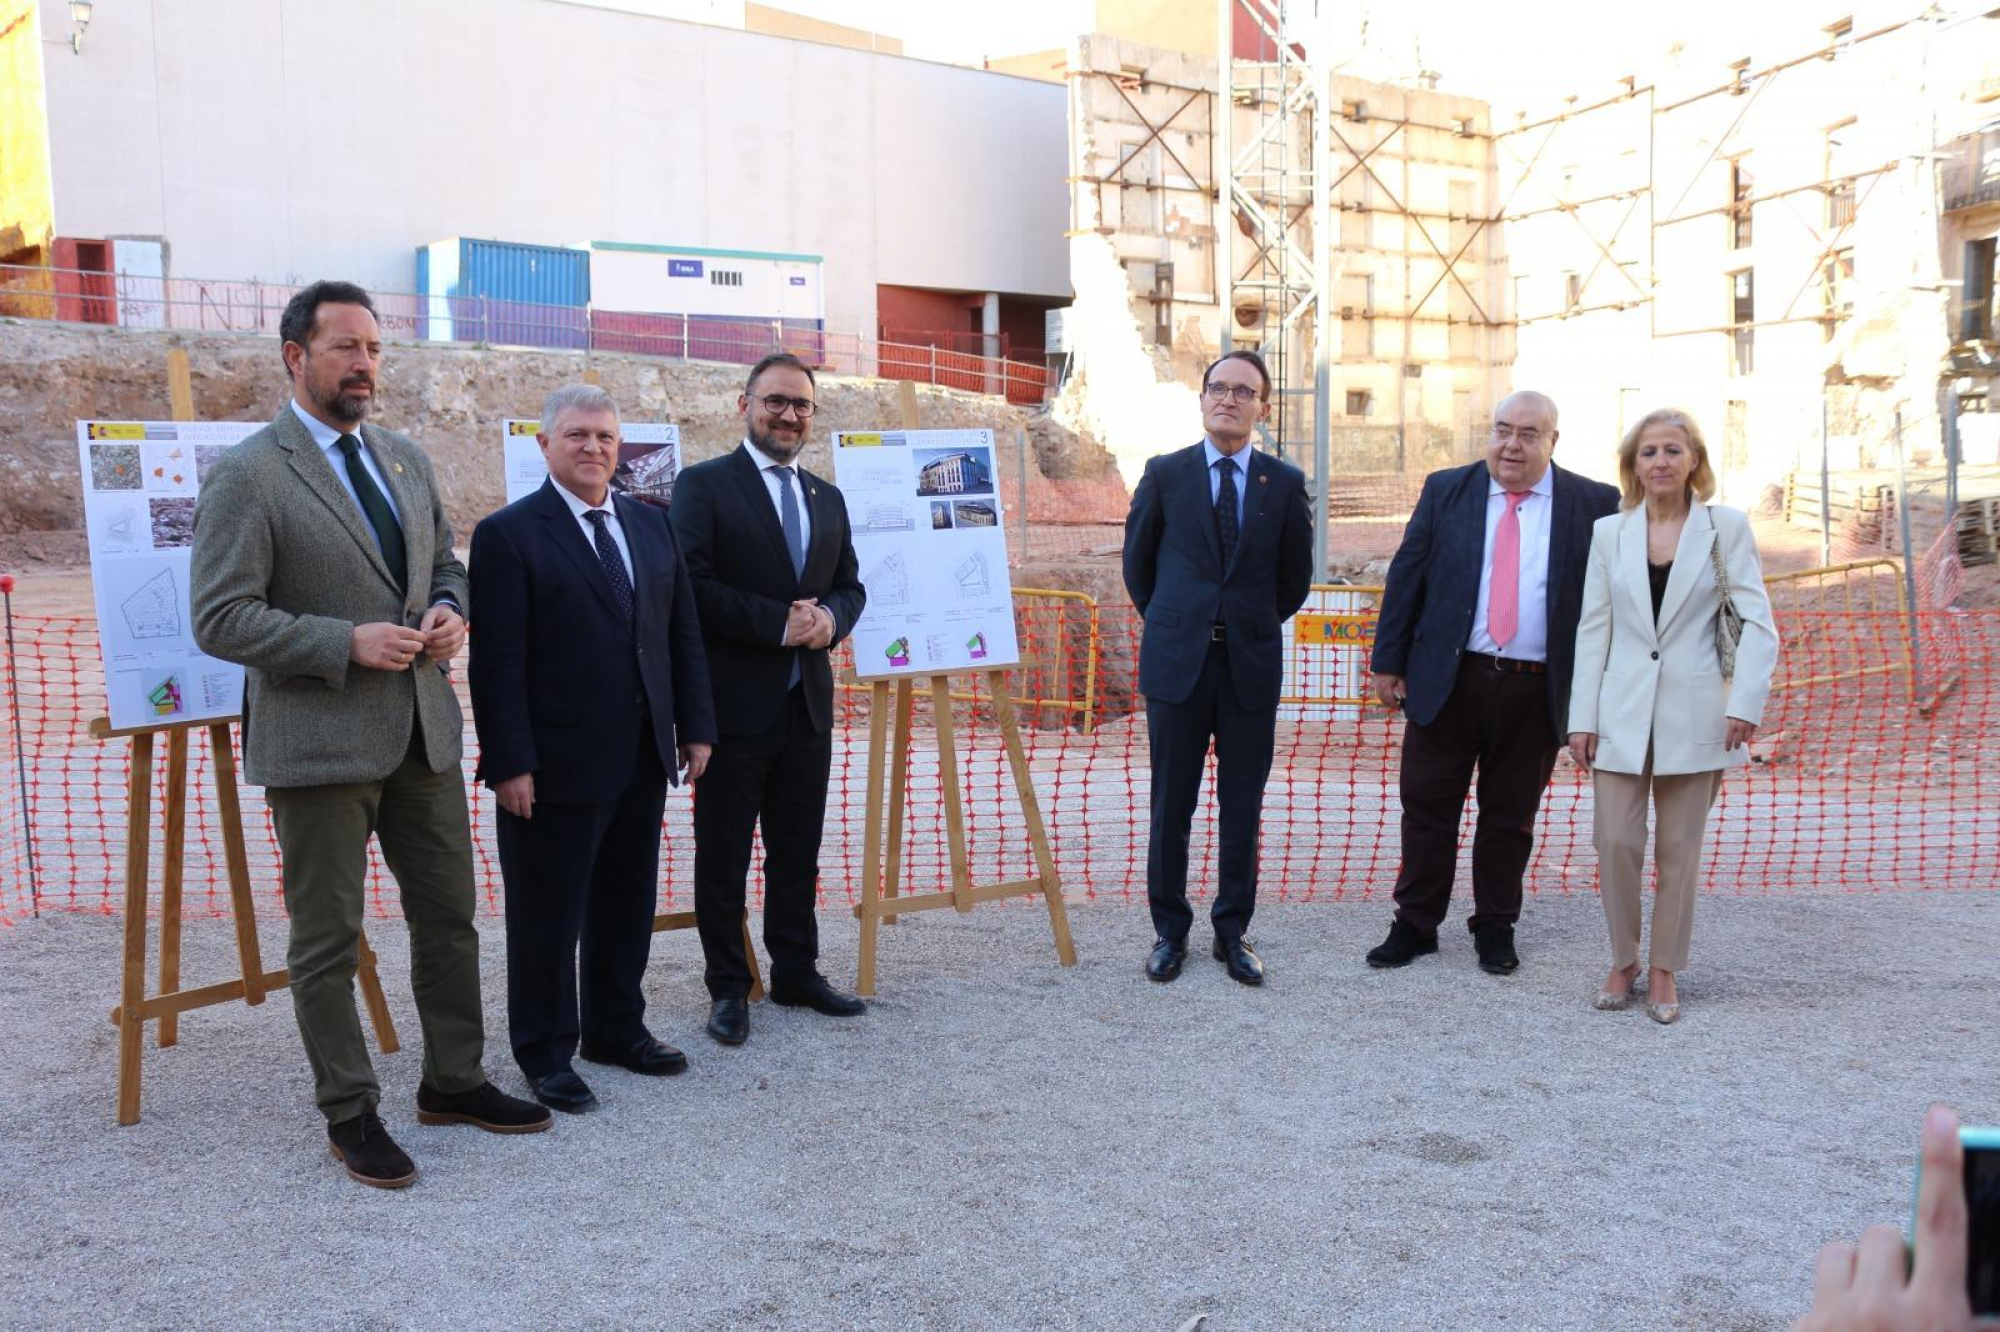 El Alcalde de Lorca pone la primera piedra del nuevo Palacio de Justicia que estará situado 'en pleno casco histórico'